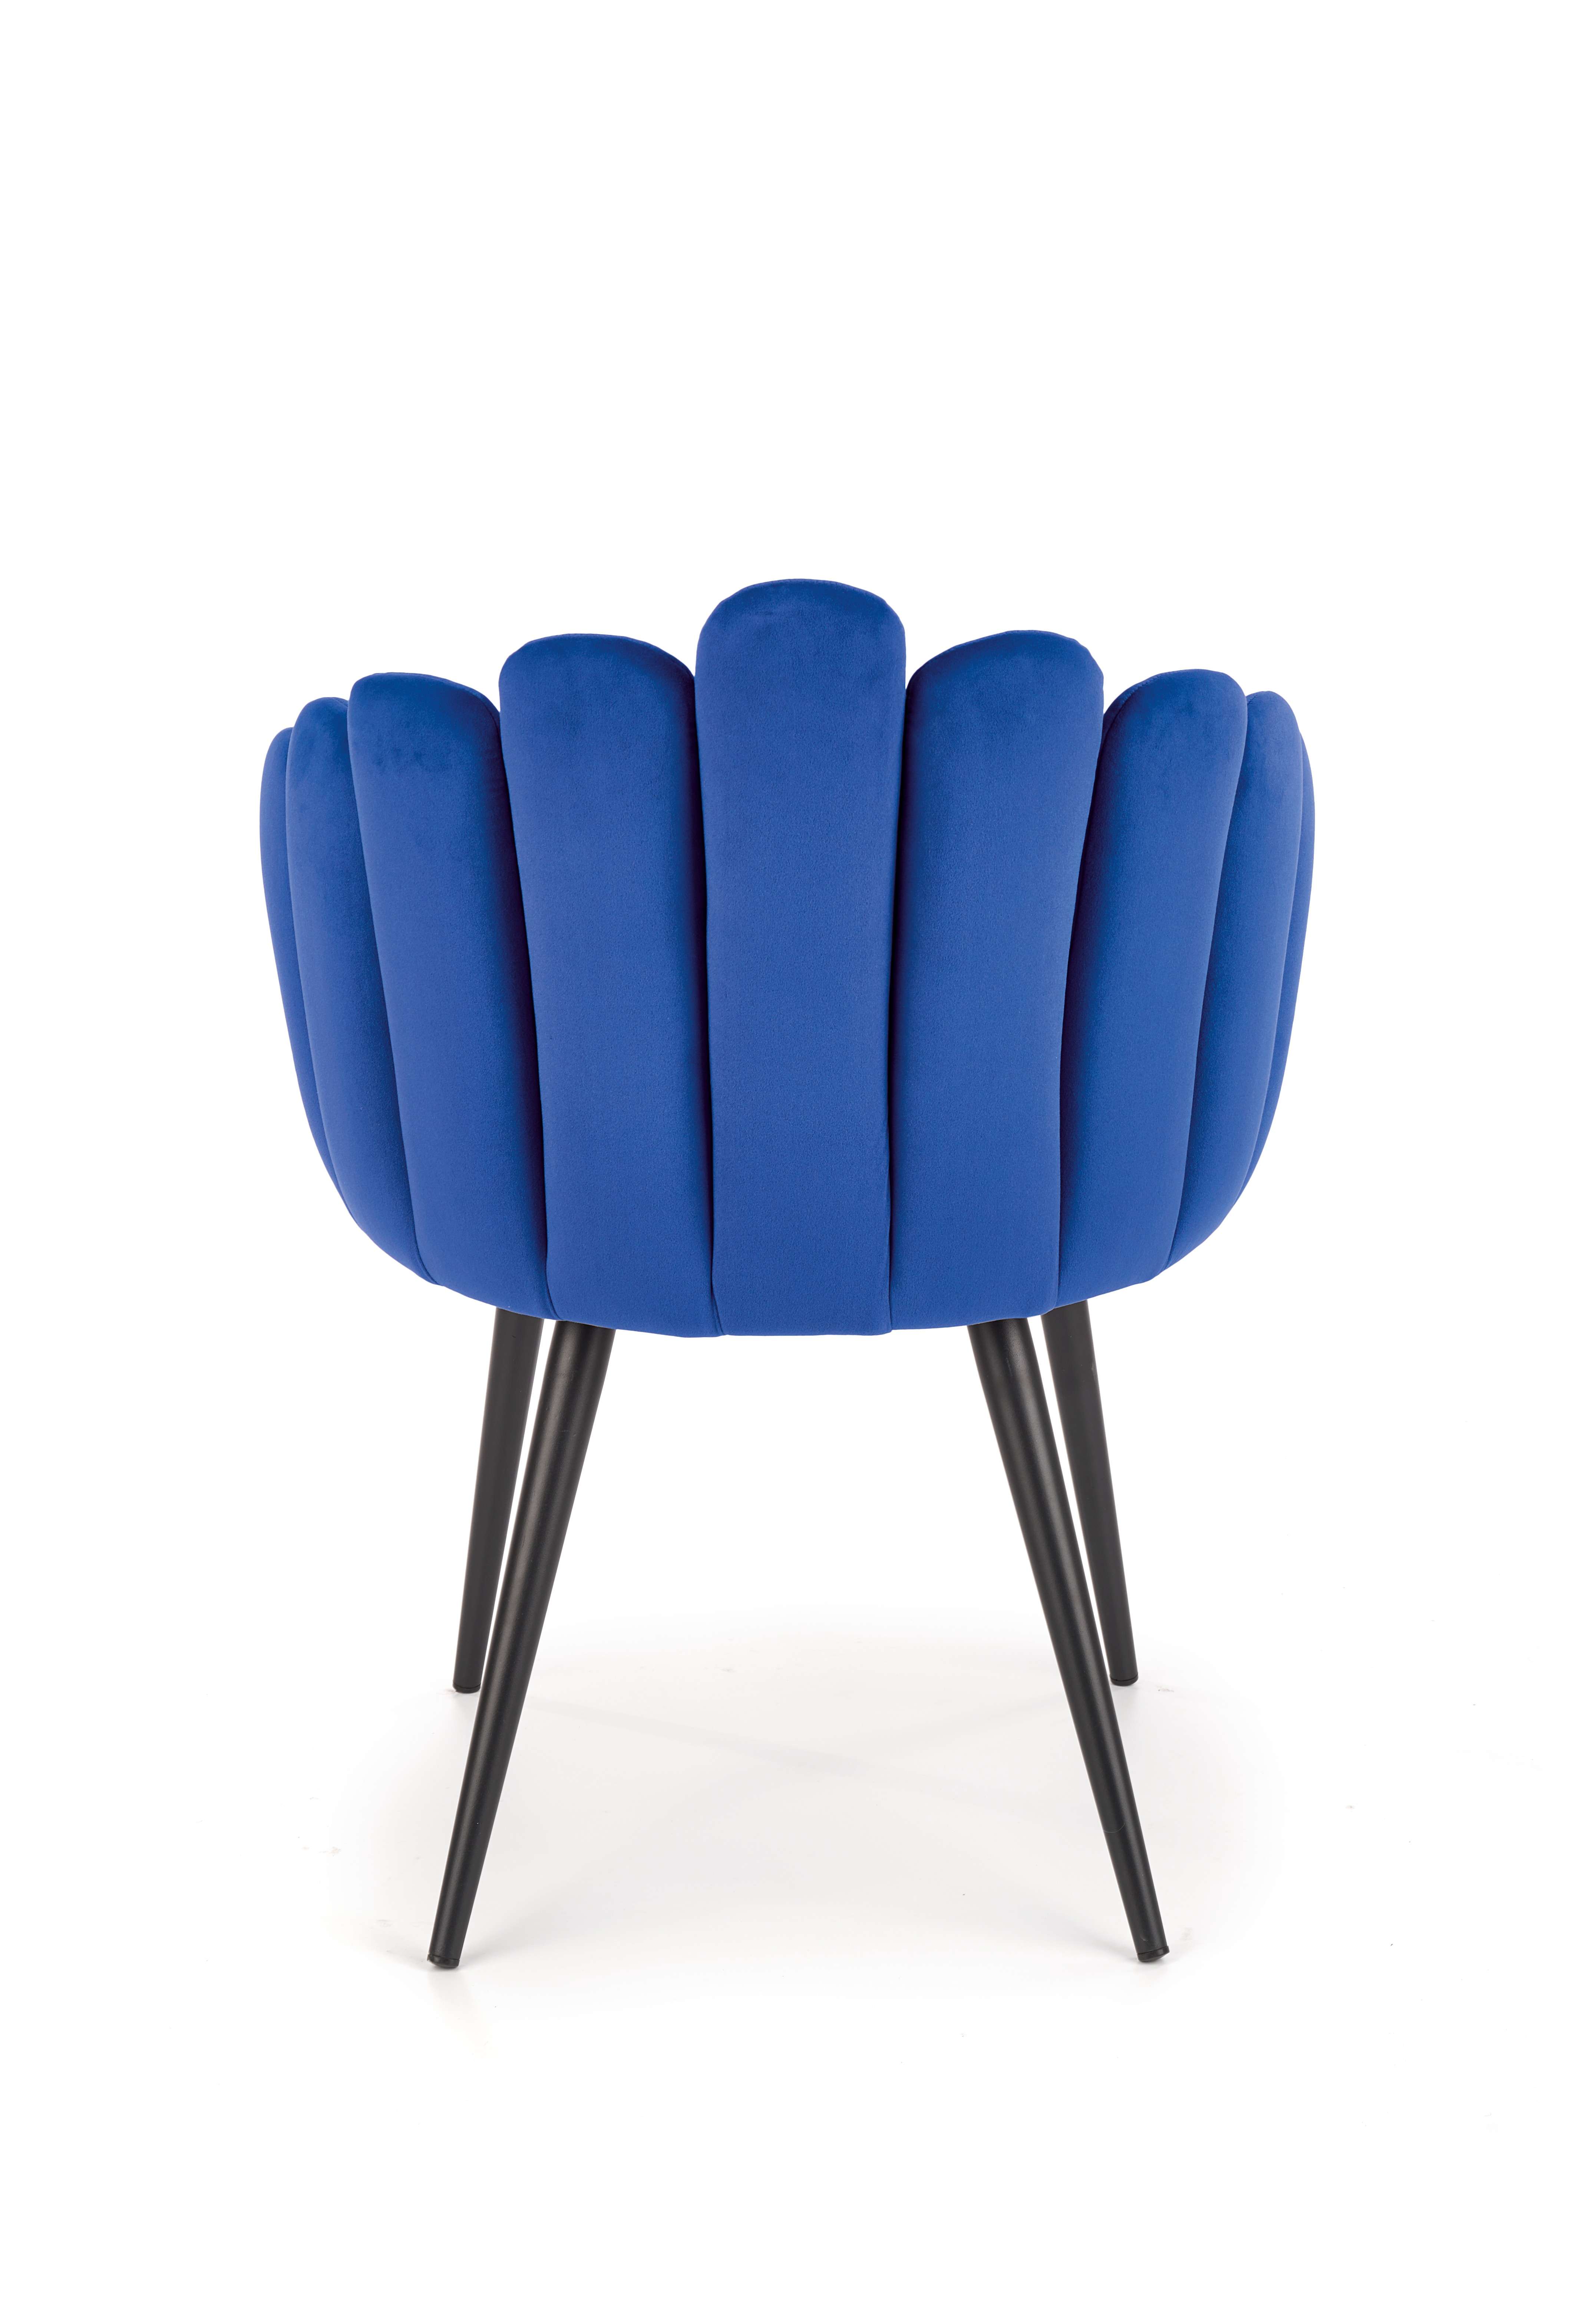 K410 Židle tmavě modrá velvet Židle k410 - tmavě modrý velvet